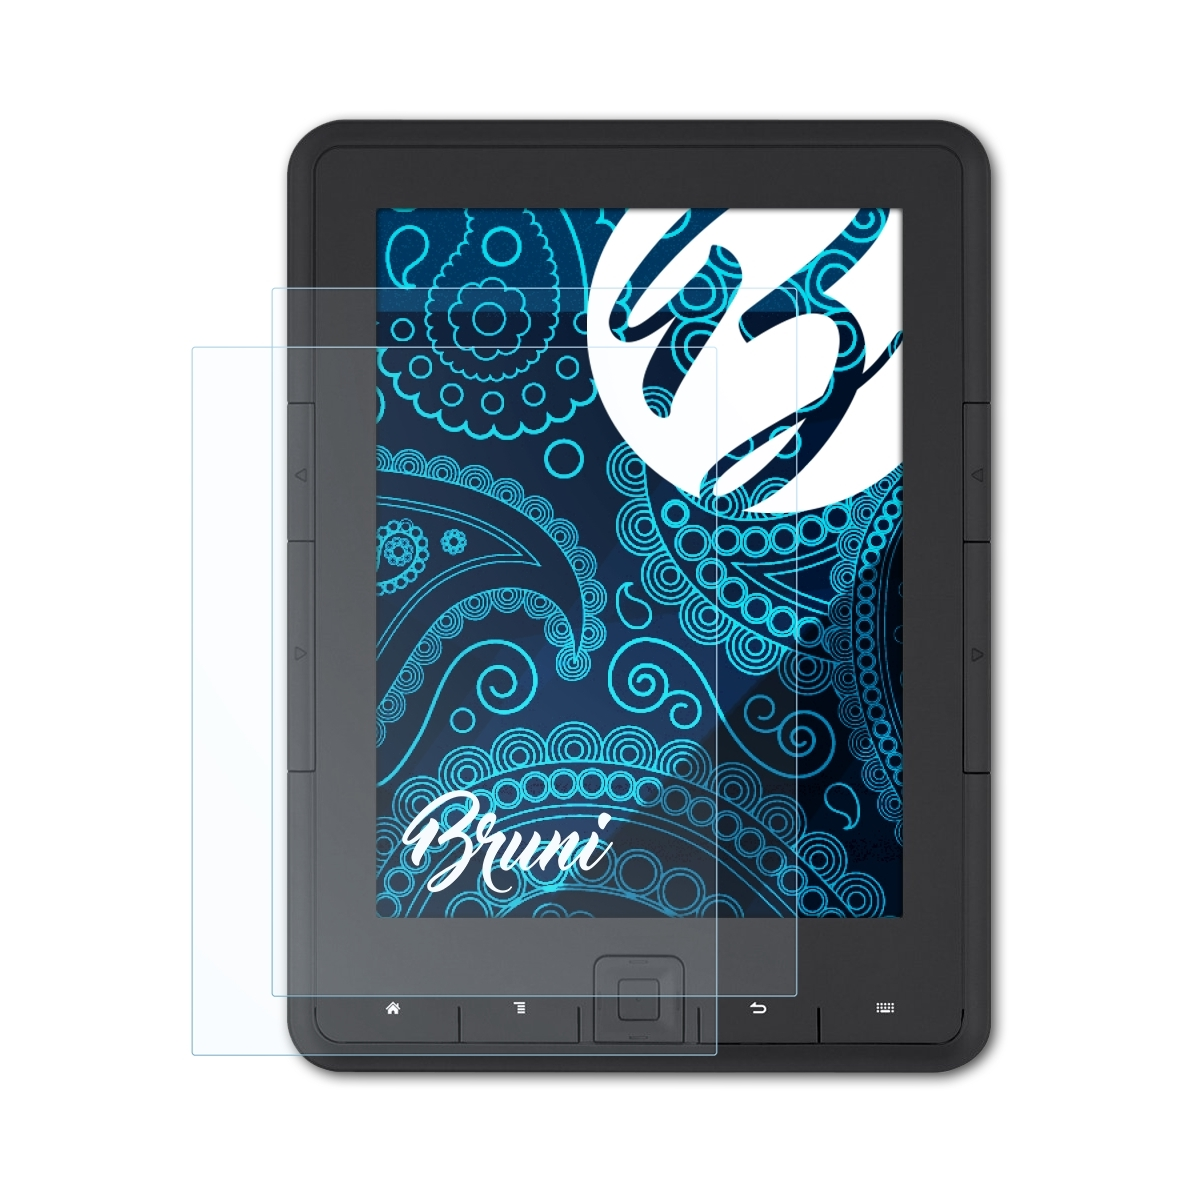 Basics-Clear Reader 2x BRUNI eBook Pyrus) Schutzfolie(für Trekstor